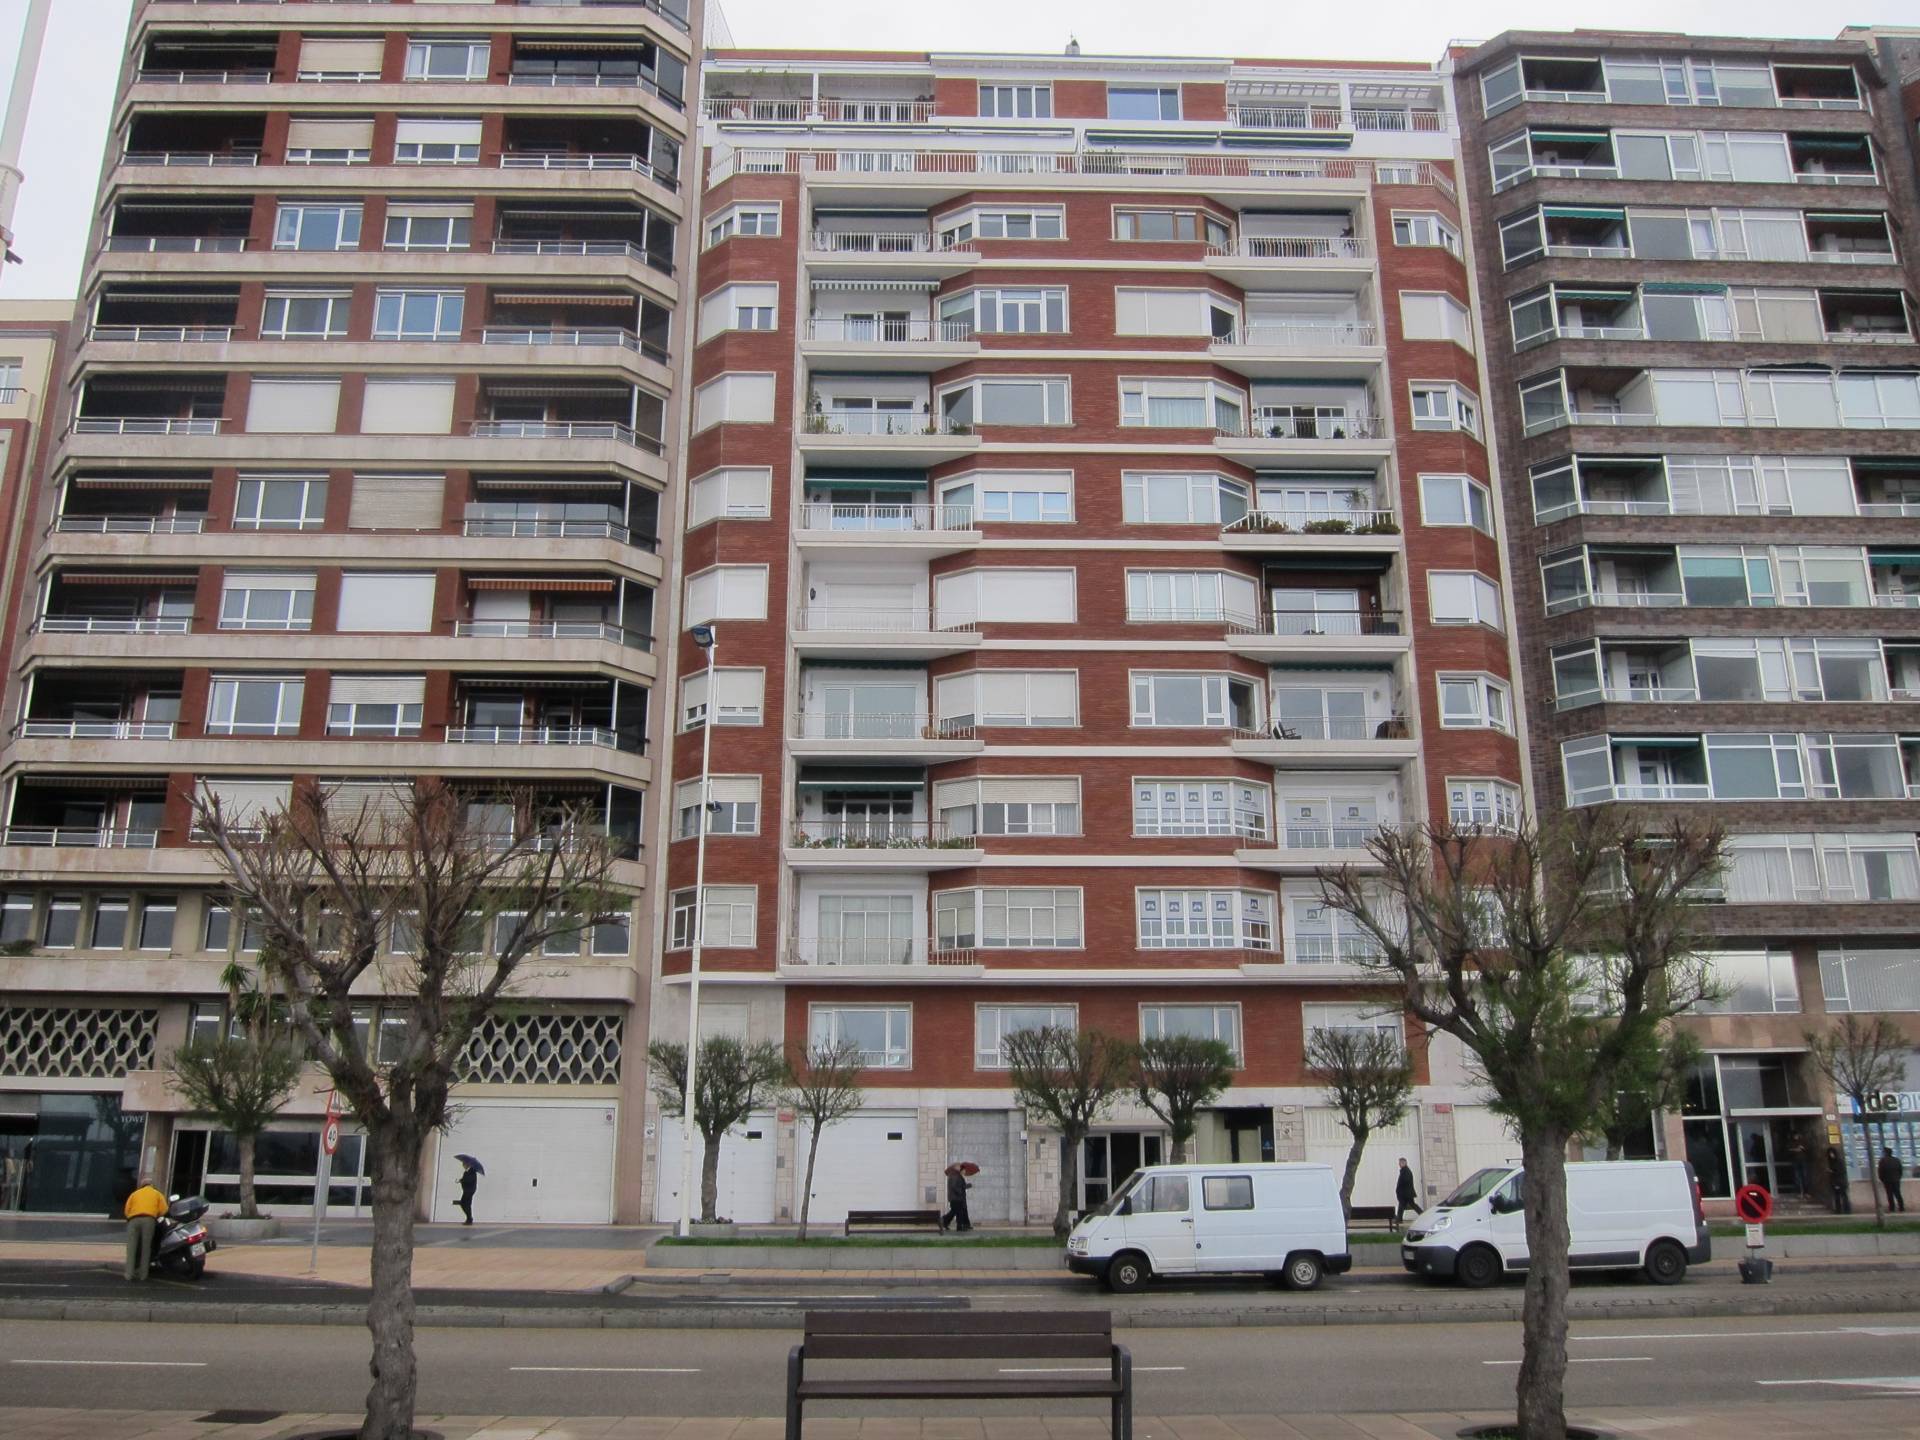 Un bloque de pisos en Santander. Fotografía de abril de 2016.